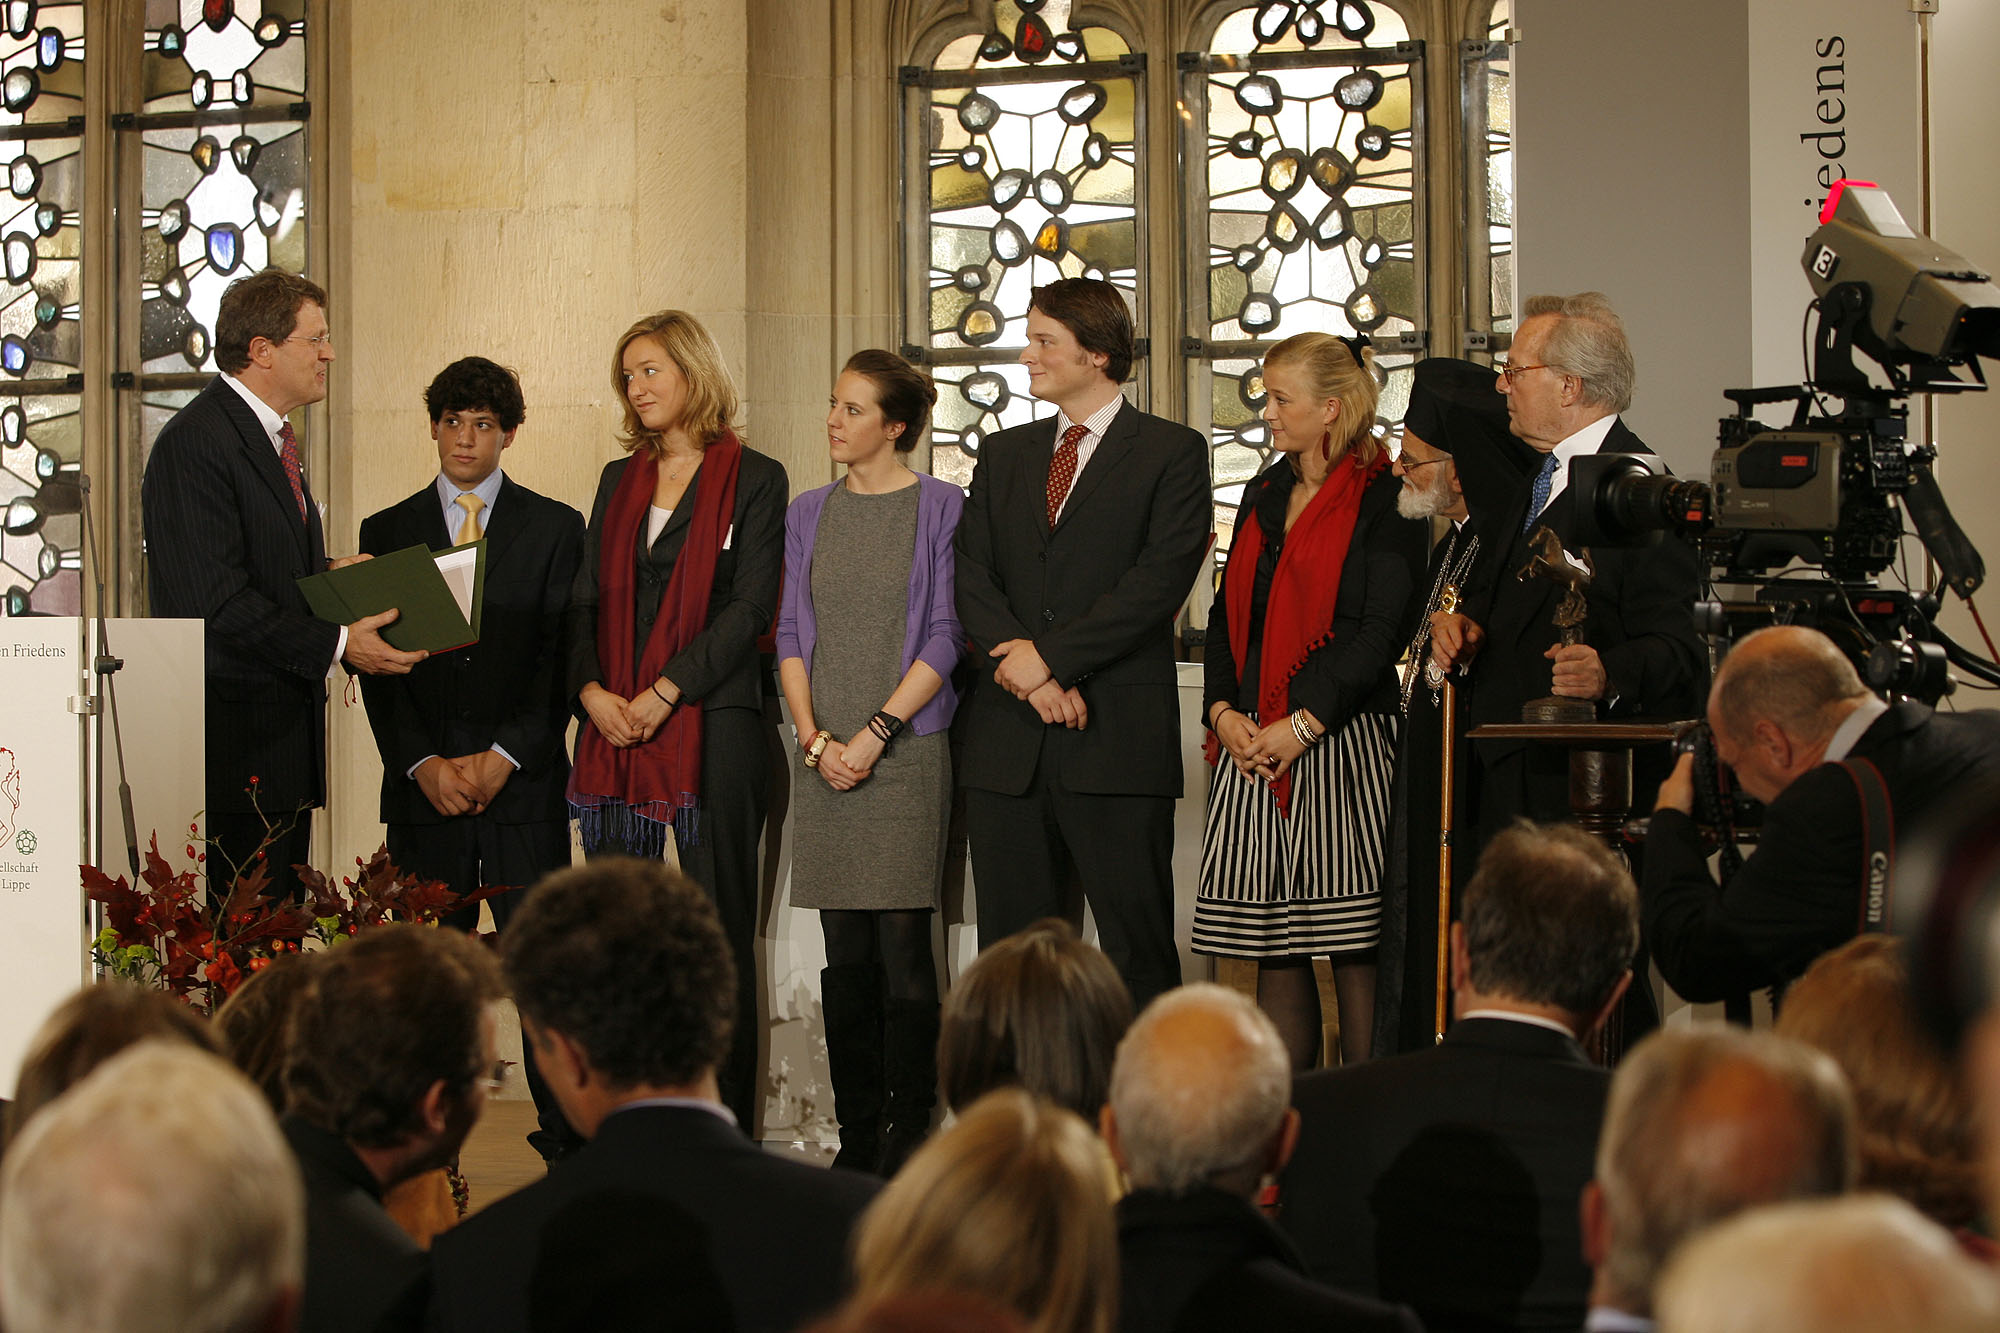 Les jeunes volontaires de l’Ordre de malte laureats du prestigieux prix de la paix de westphalie